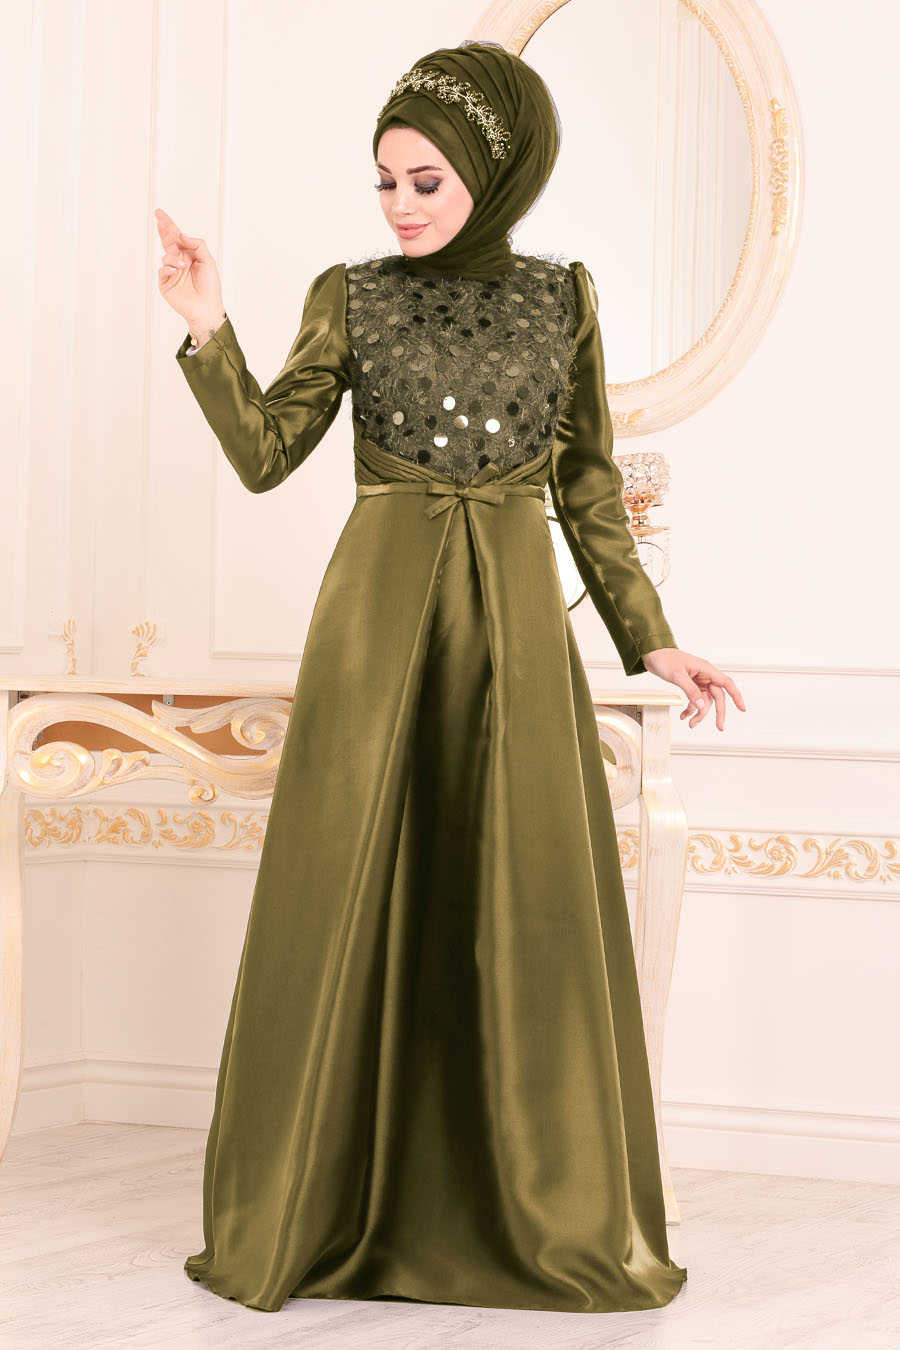 Neva Style - Stylish Khaki Modest Islamic Clothing Wedding Dress 3755HK